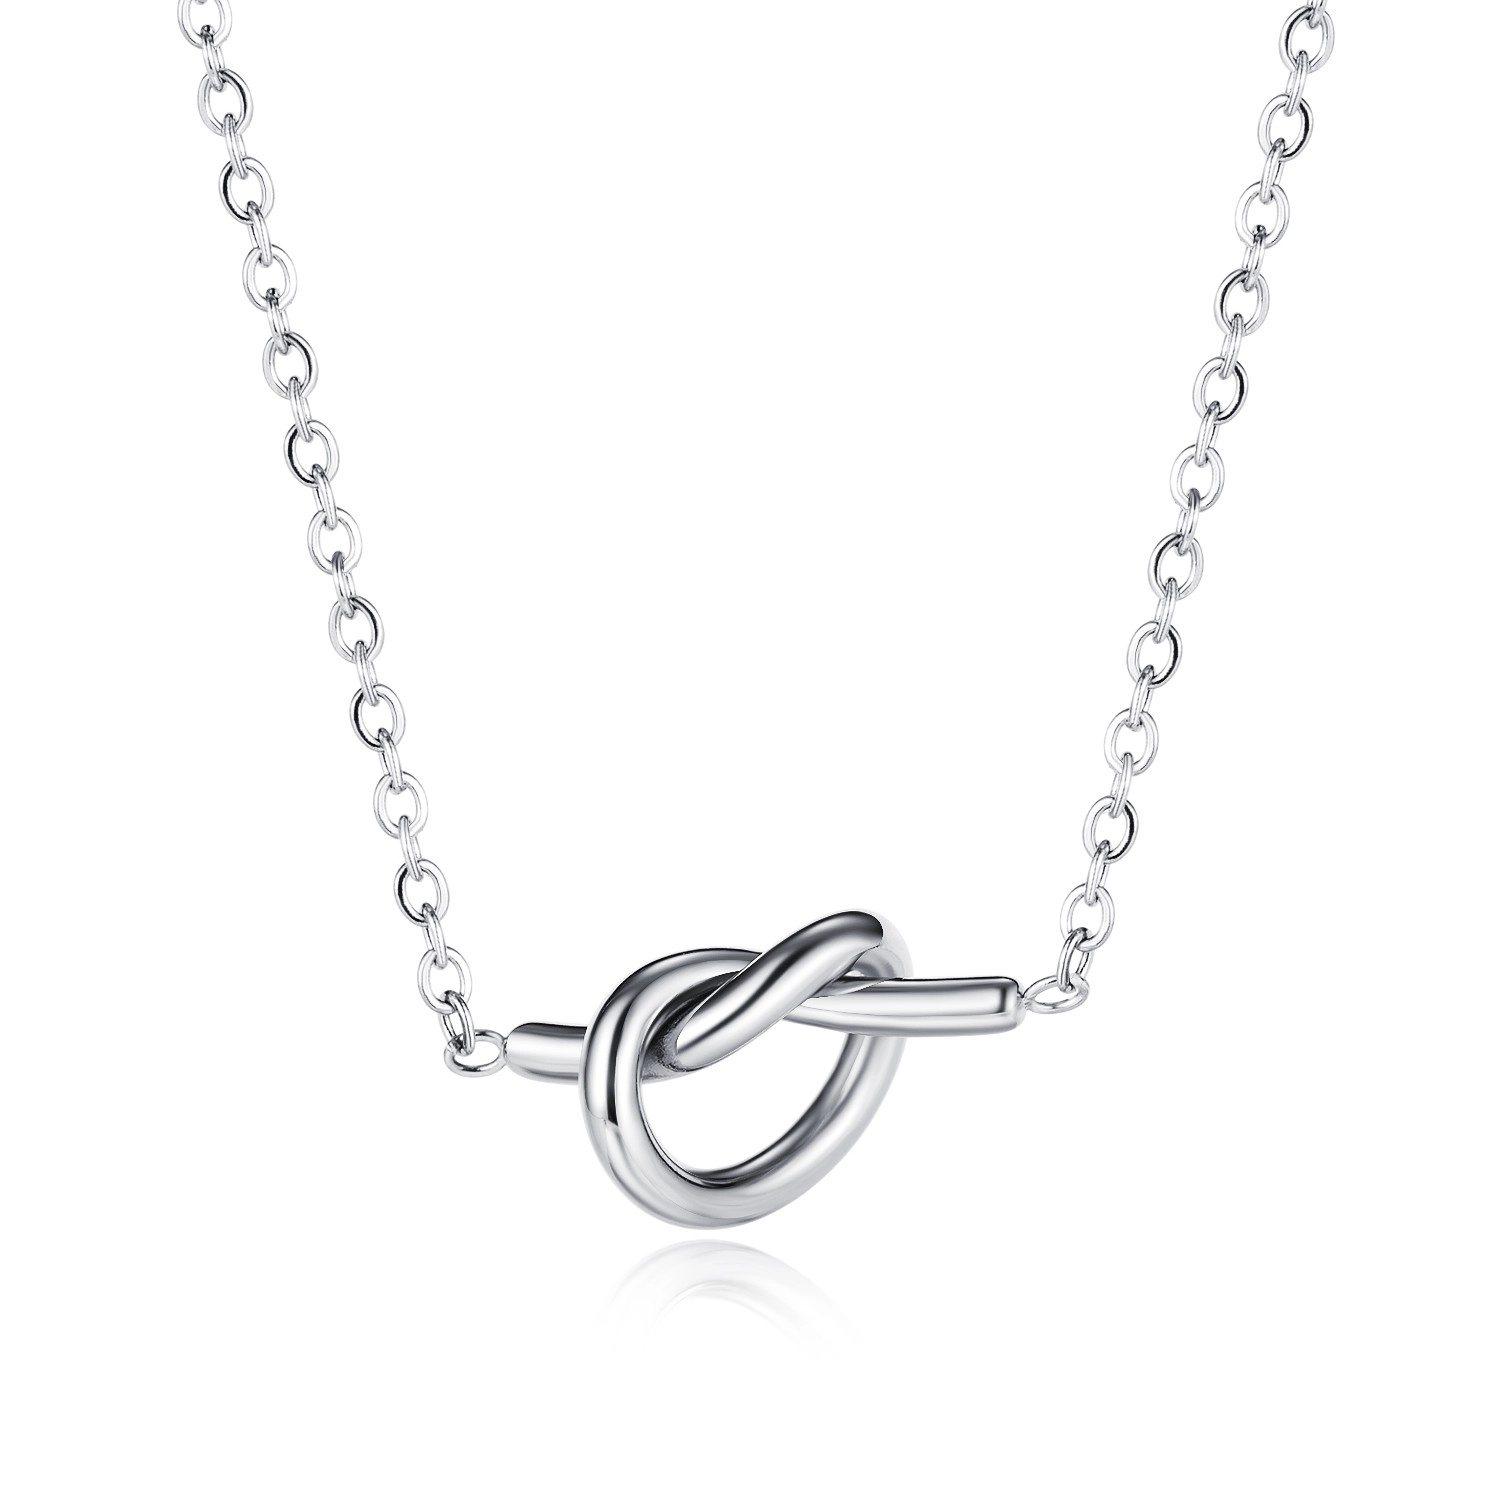 Ocelový náhrdelník stříbrné barvy - srdce s propletenými rameny, jemný řetízek